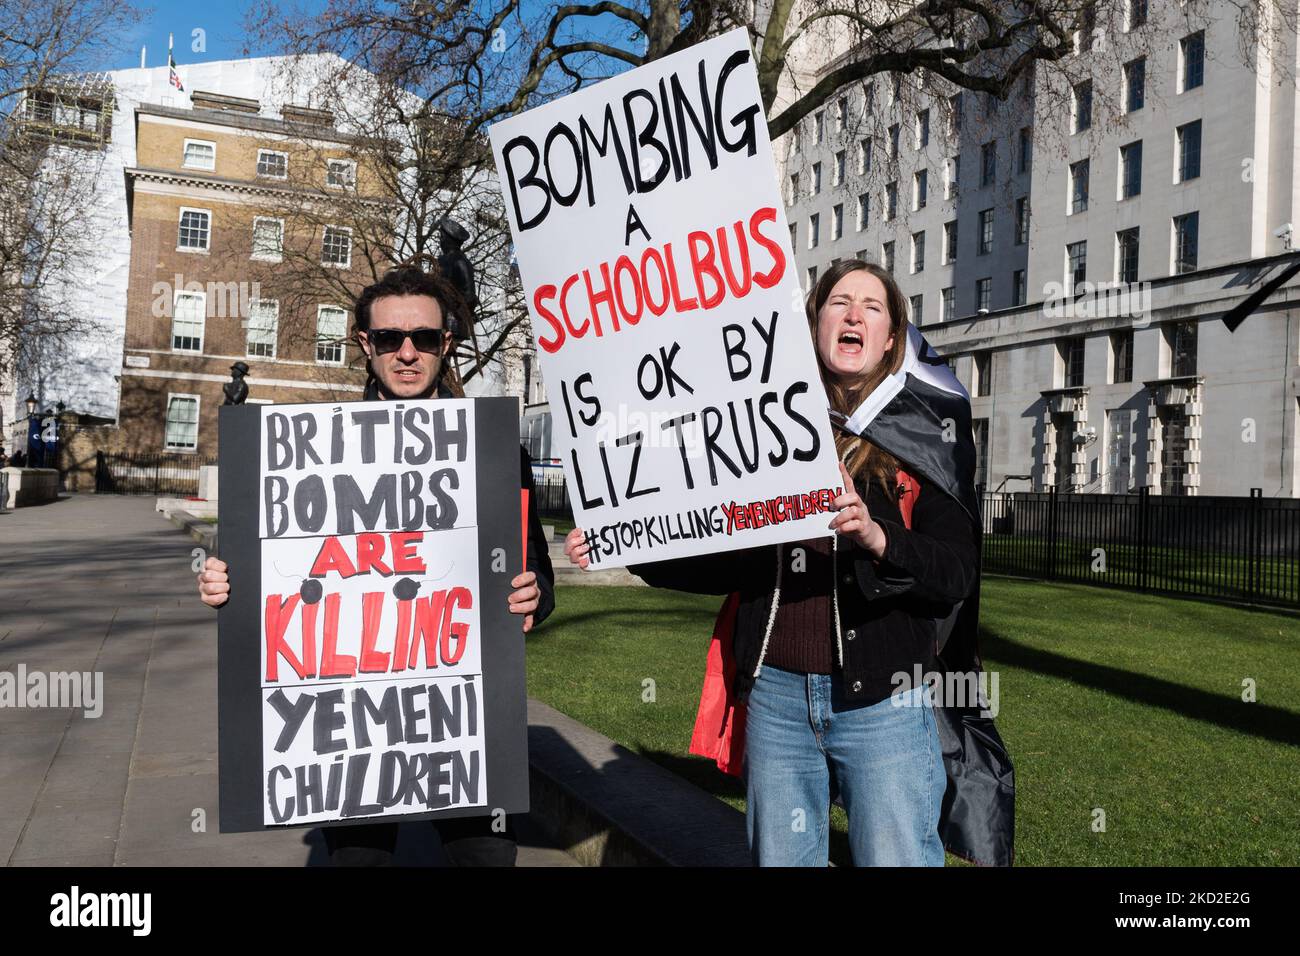 LONDON, VEREINIGTES KÖNIGREICH - 12. FEBRUAR 2022: Demonstranten halten Plakate während eines Protestes vor der Downing Street gegen den anhaltenden Krieg und die humanitäre Krise im Jemen am 12. Februar 2022 in London, England. Die Demonstranten fordern die britische Regierung auf, den Waffenverkauf an Saudi-Arabien zu beenden, das seit sieben Jahren die Allianz gegen die vom Iran unterstützten Huthis im Jemen anführt. (Foto von Wiktor Szymanowicz/NurPhoto) Stockfoto